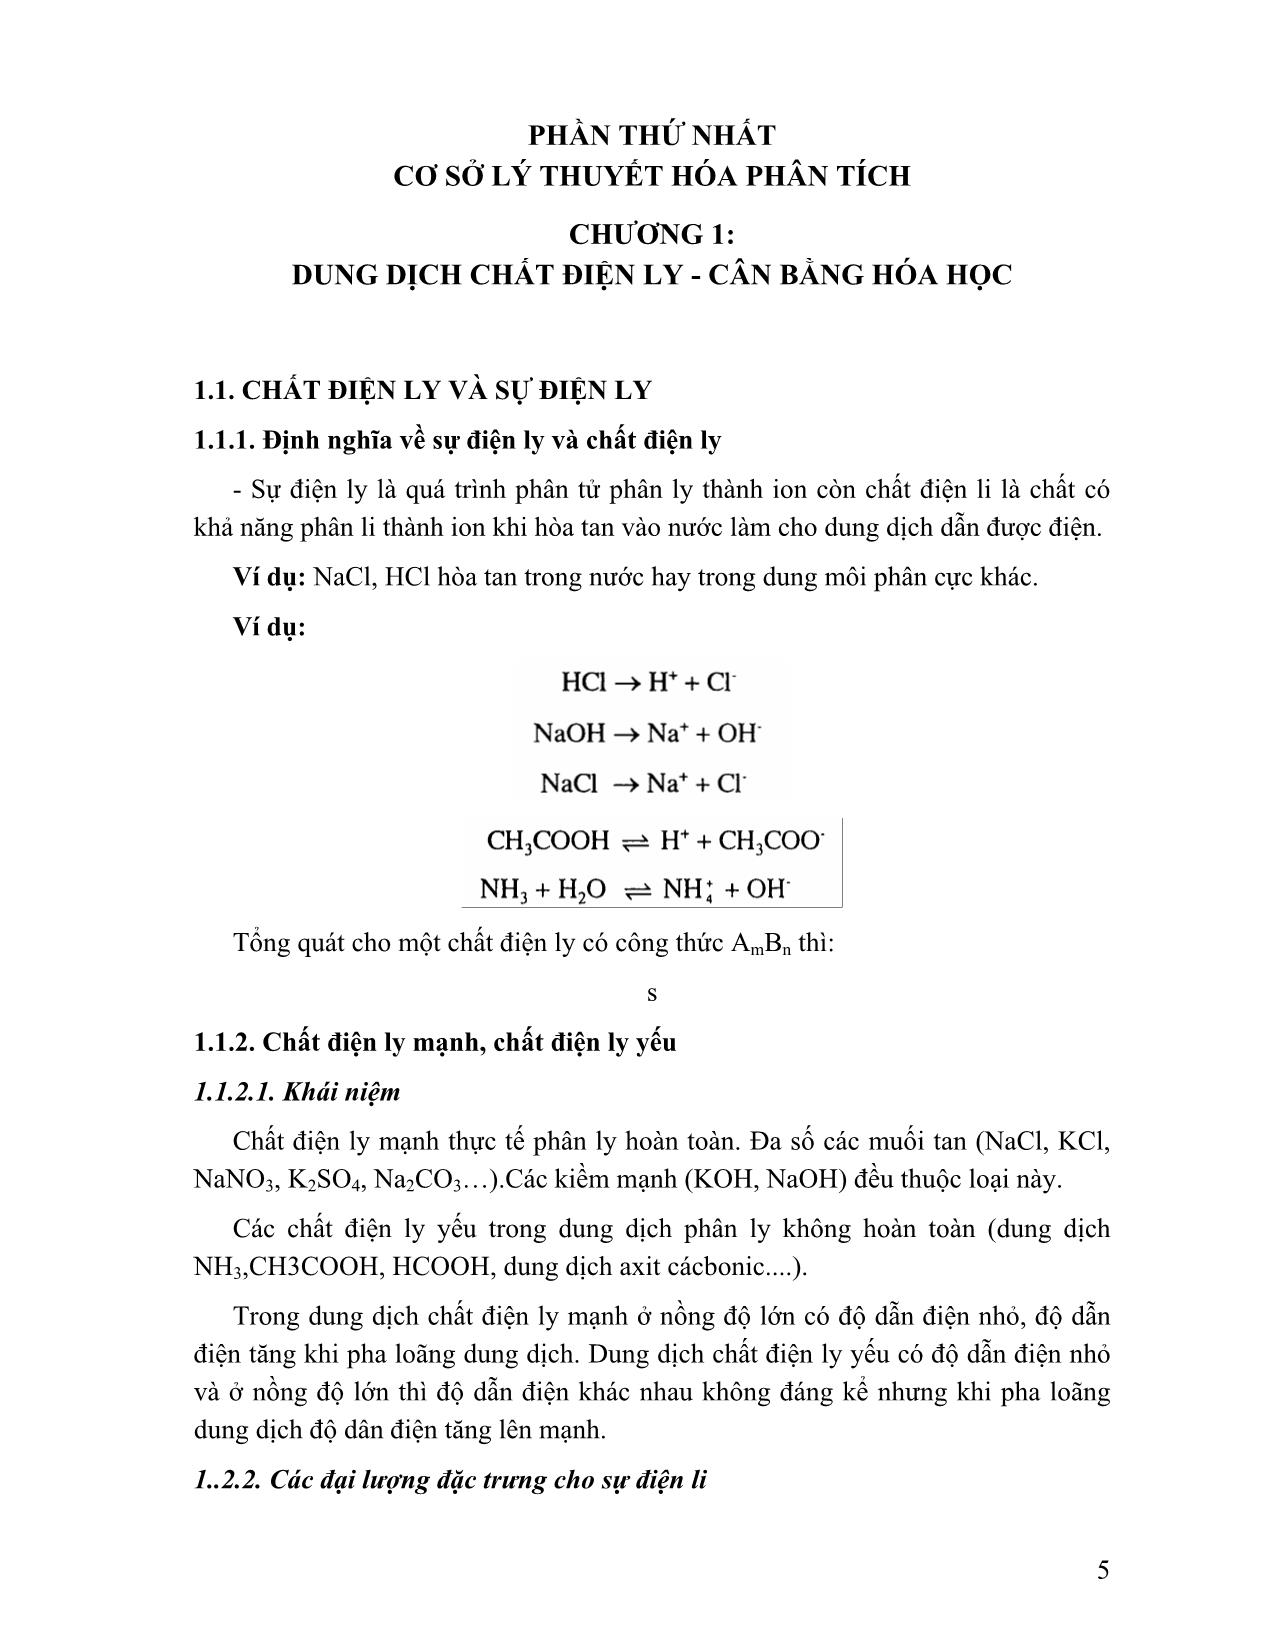 Giáo trình Hóa học phân tích (Phần 1) trang 5